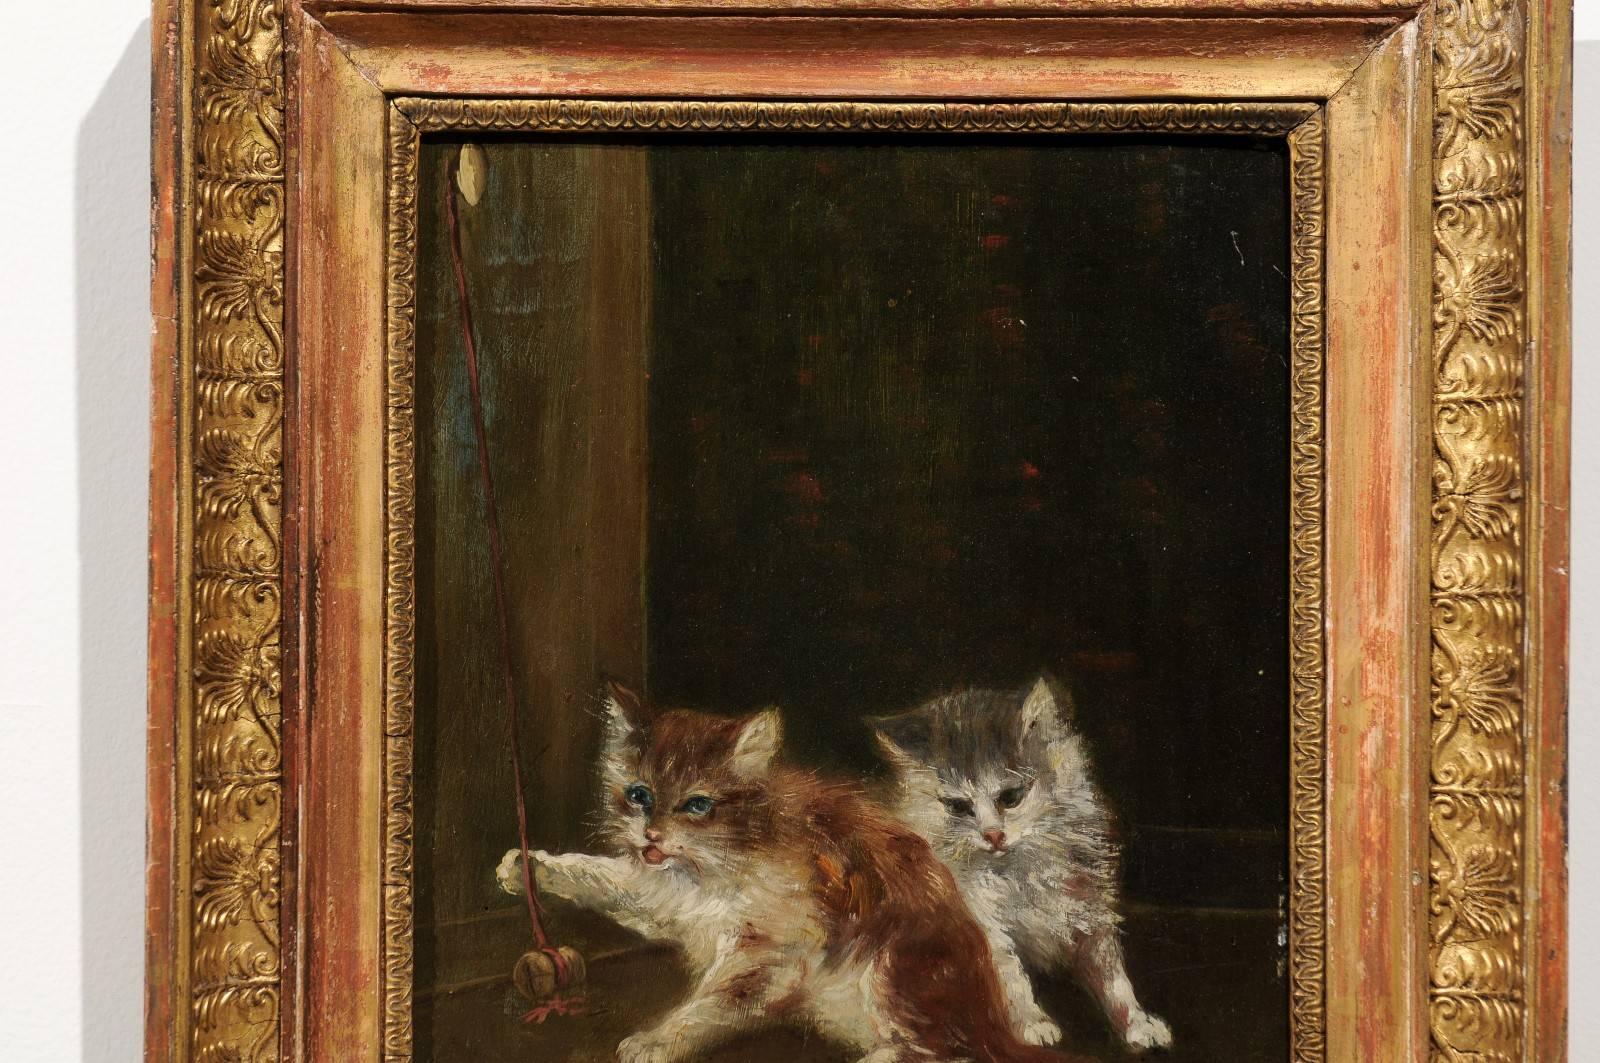 Toile Peinture à l'huile sur toile française des années 1890 représentant des chatons jouant dans un cadre en bois doré